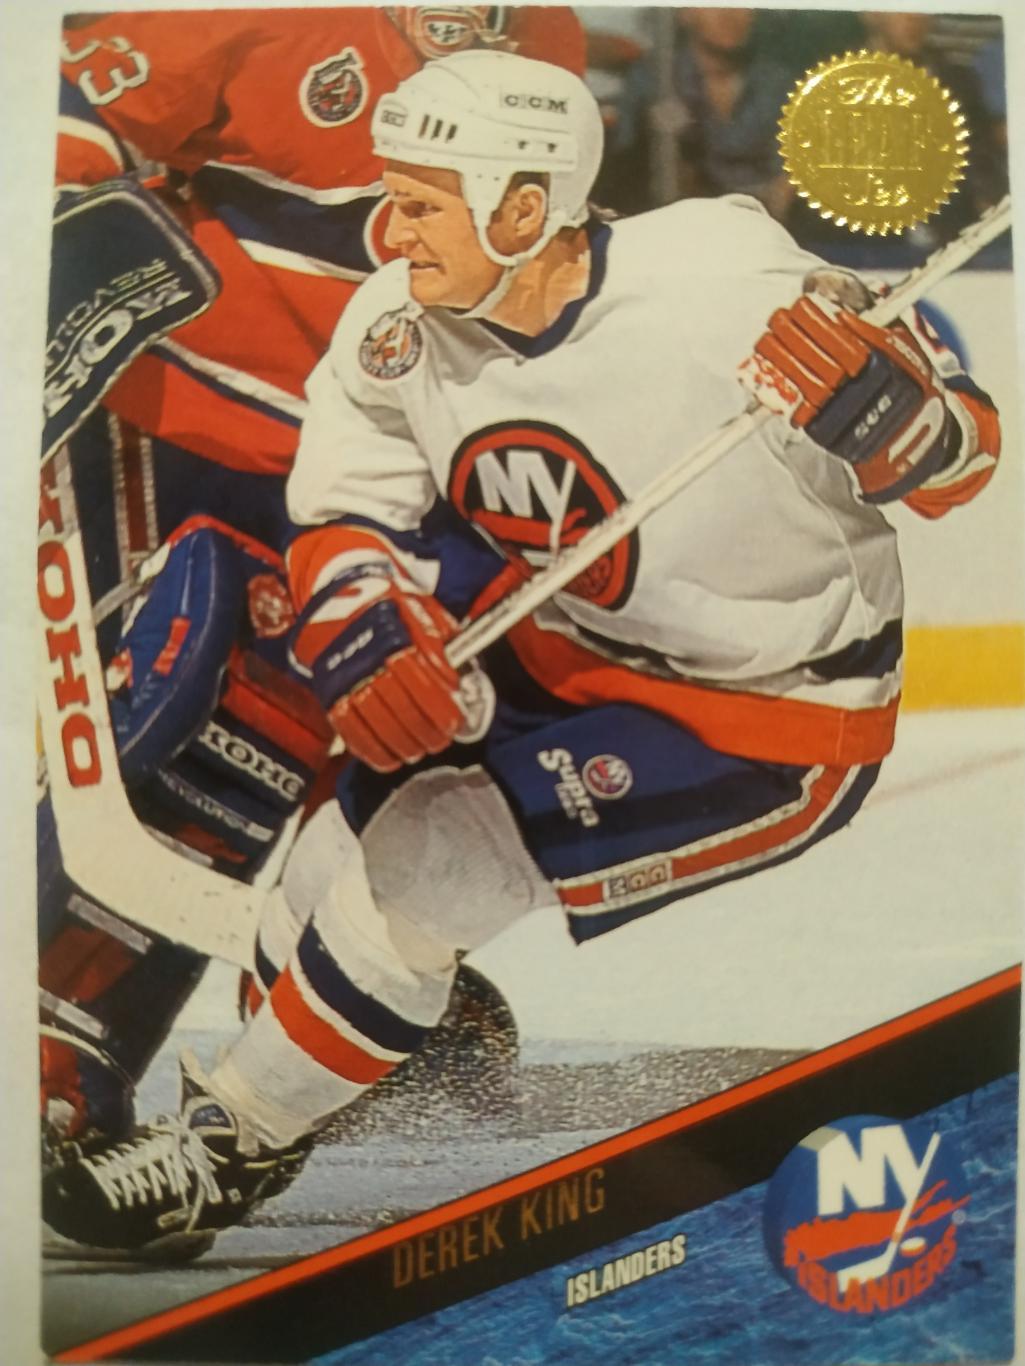 ХОККЕЙ КАРТОЧКА НХЛ LEAF SET SERIES ONE 1993-94 DEREK KING ISLANDERS #119